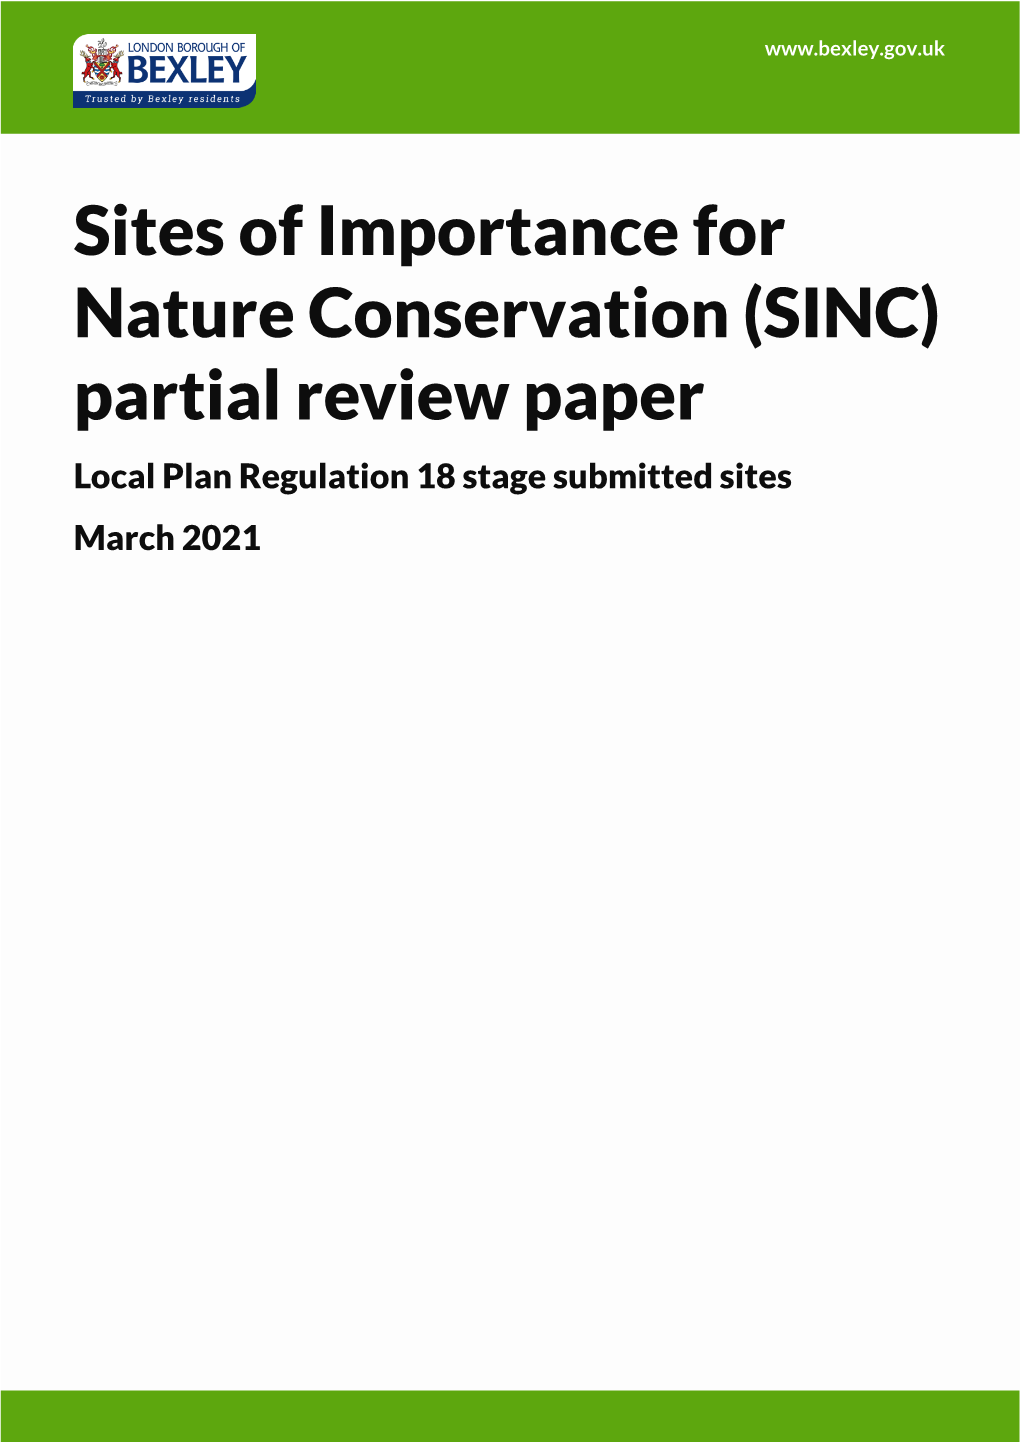 SINC Partial Review Paper (March 2021) (PDF)